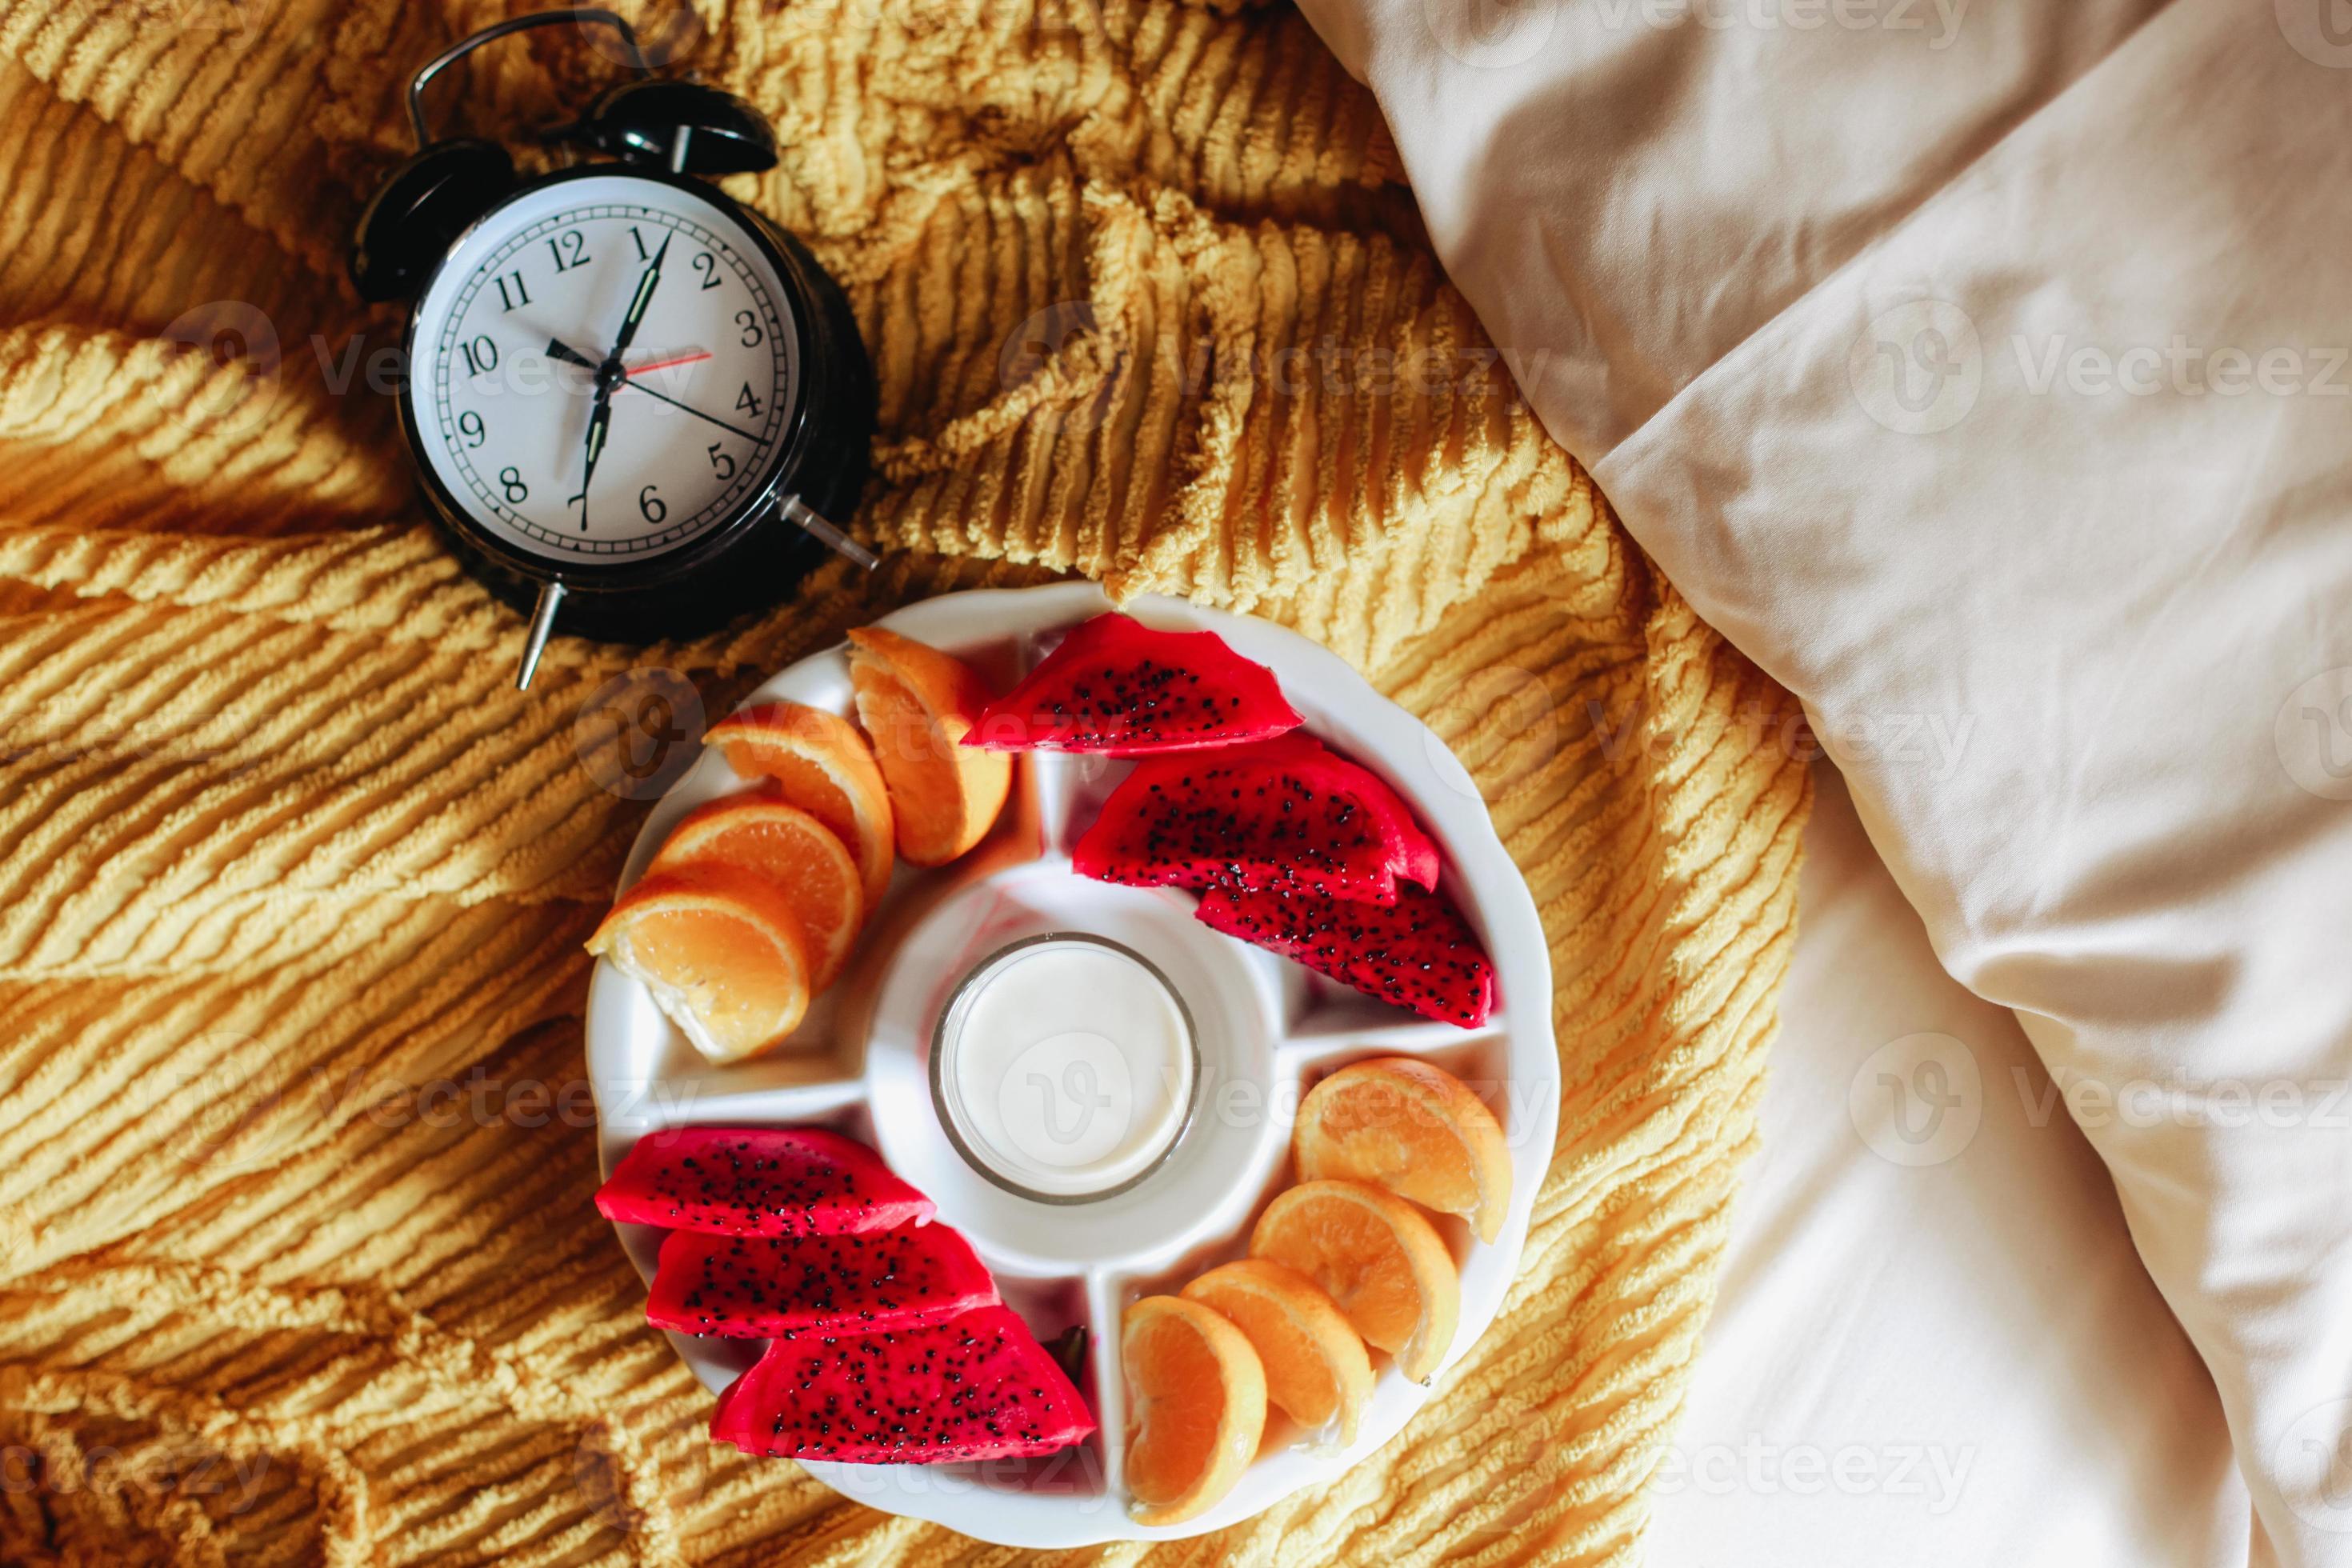 divers fruits pour le petit déjeuner avec horloge indiquant 7 heures sur le lit photo